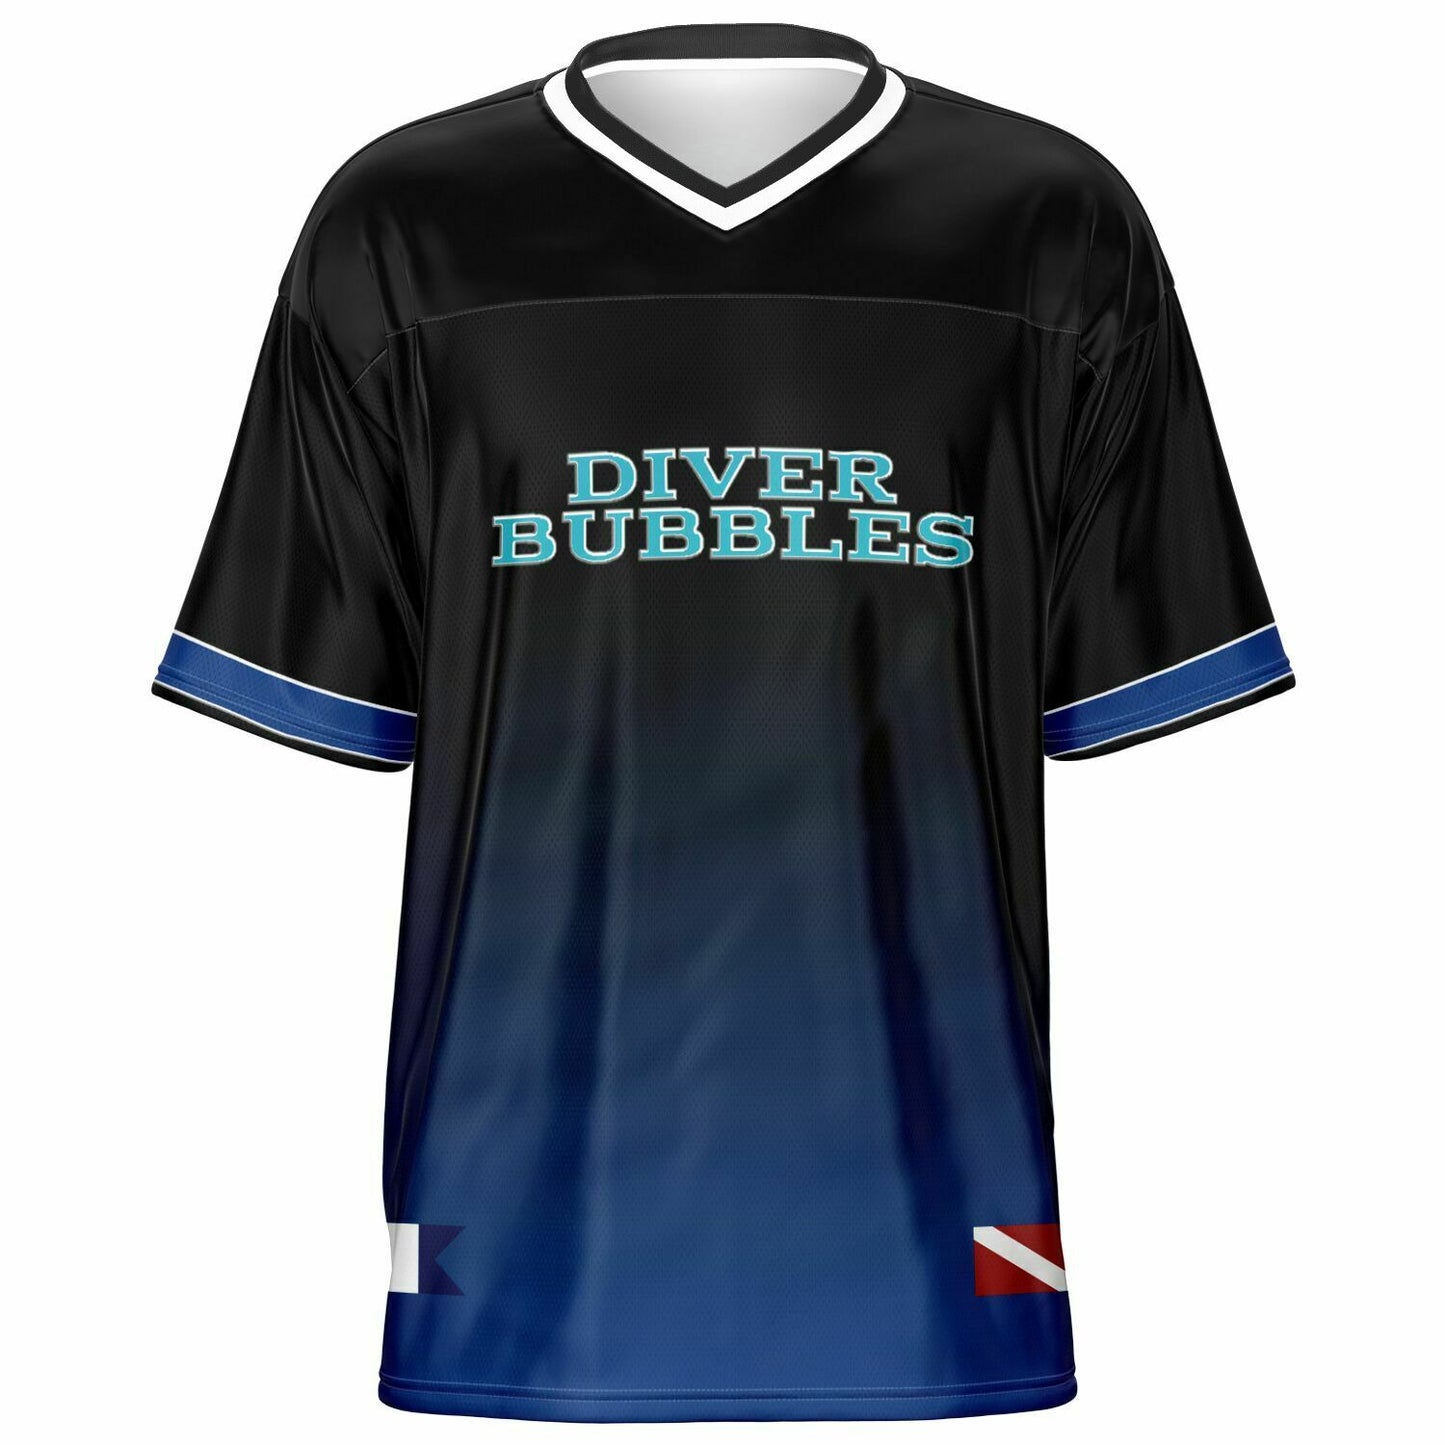 Diver Bubbles Jersey